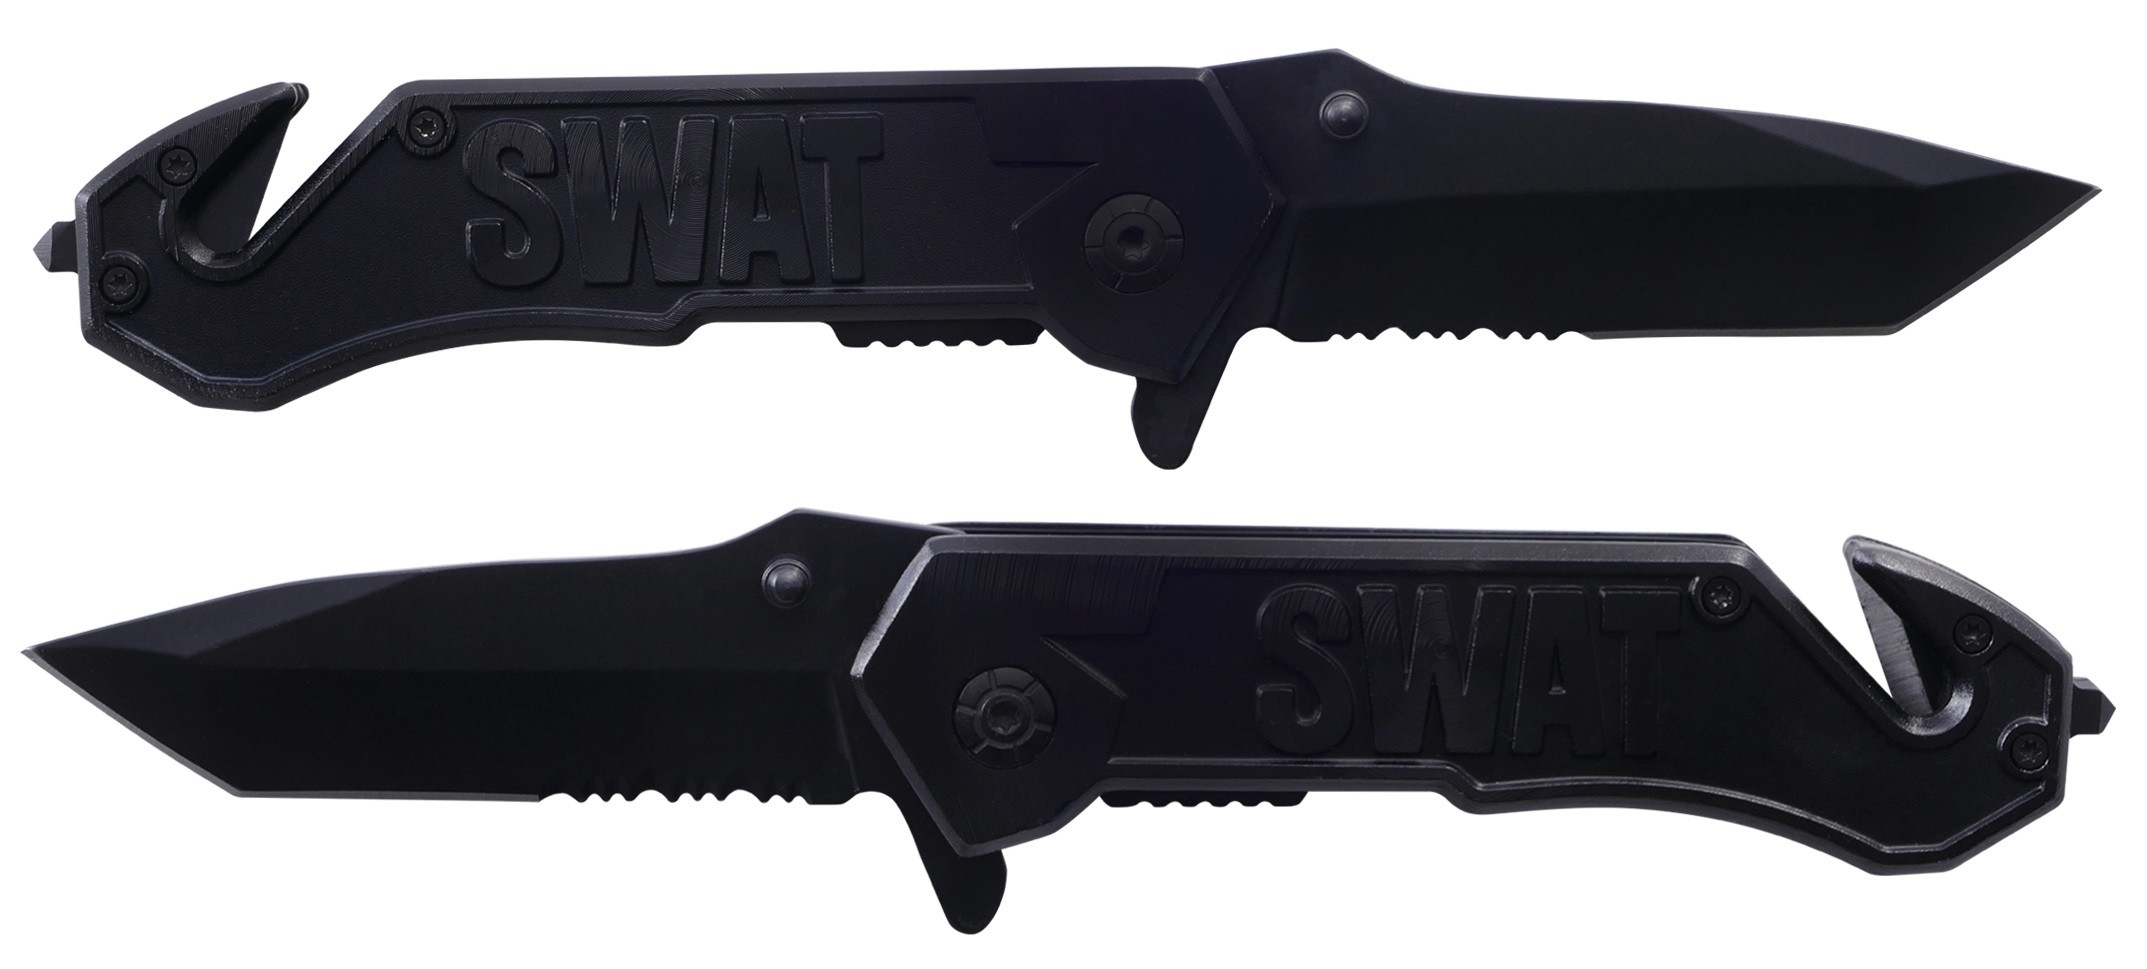 Couteau de sécurité - swat